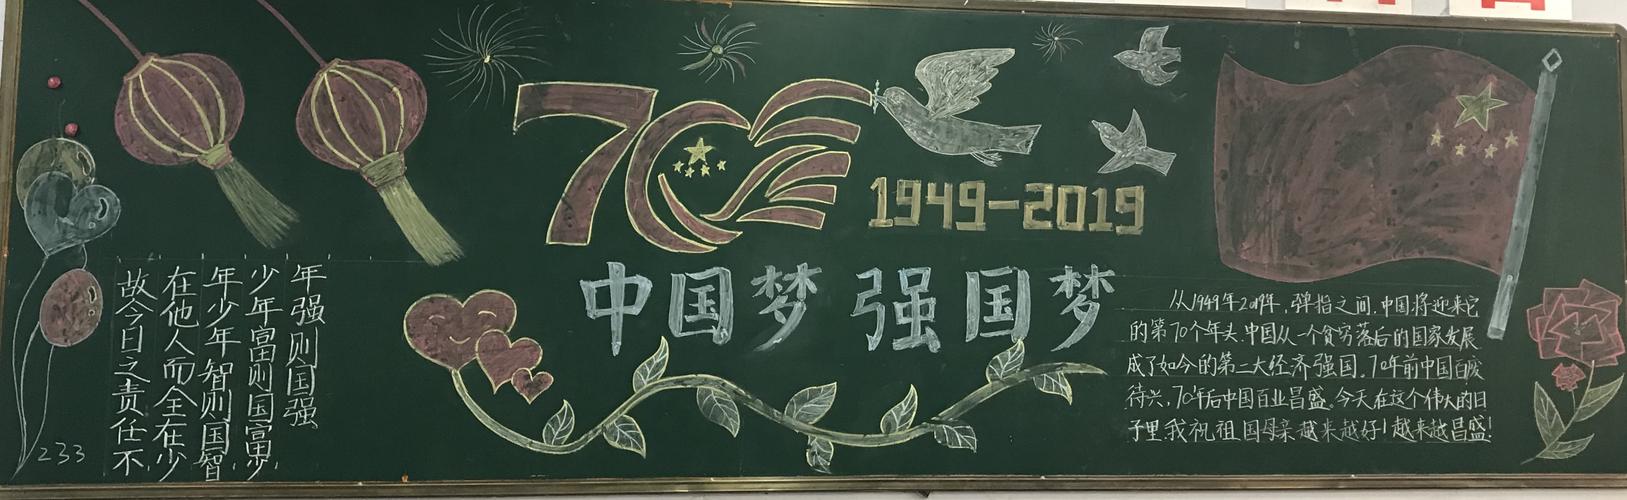 运城格致中学喜迎70华诞欢度国庆黑板报展